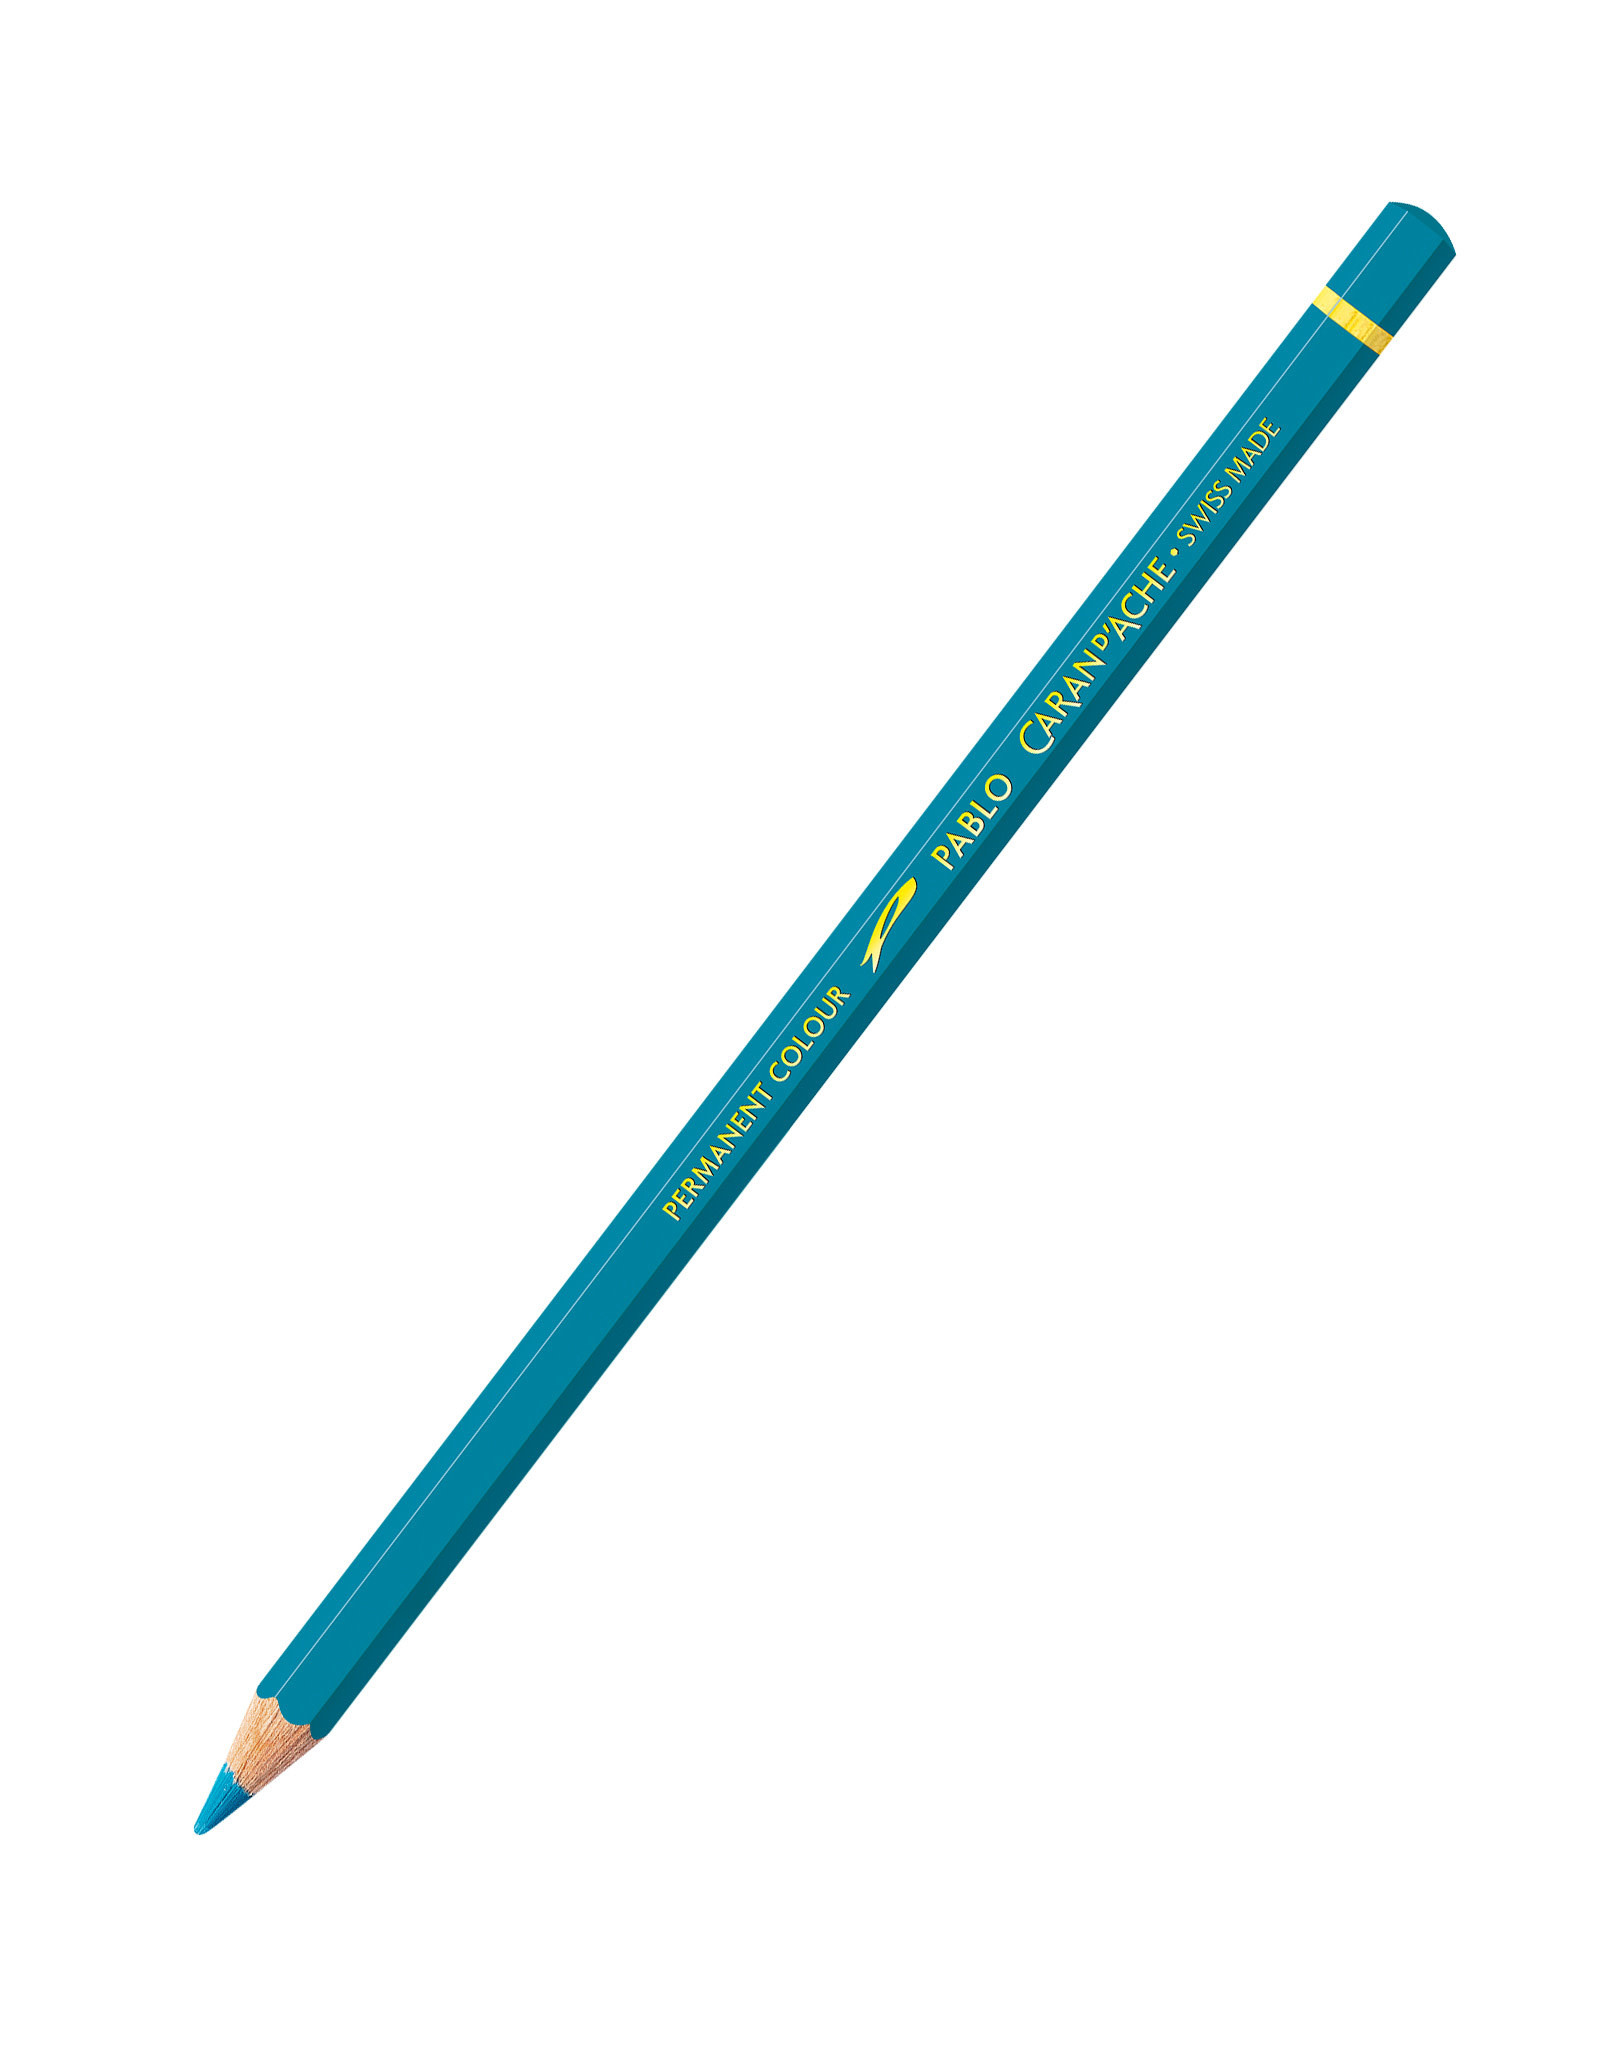 CLEARANCE Pablo Pencil Cobalt Blue